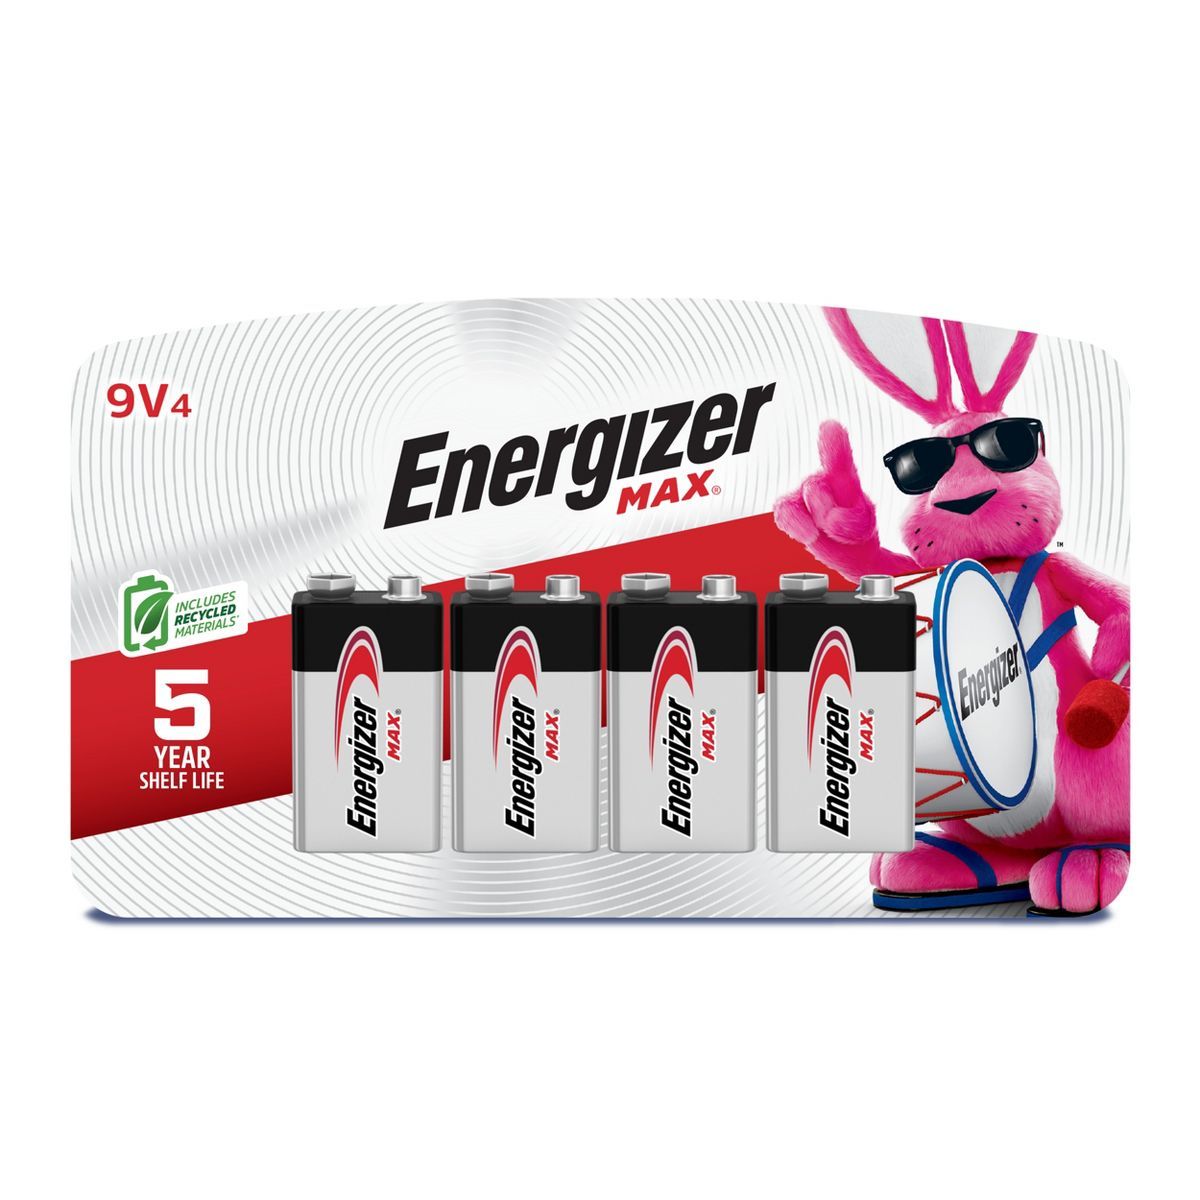 Energizer Max 9V Batteries - Alkaline Battery | Target